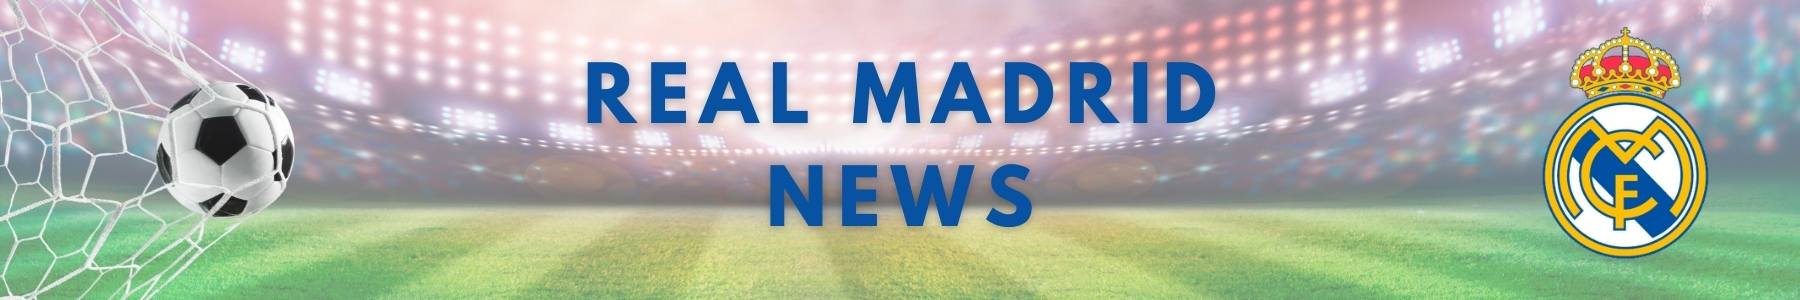 Real Madrid - Latest News